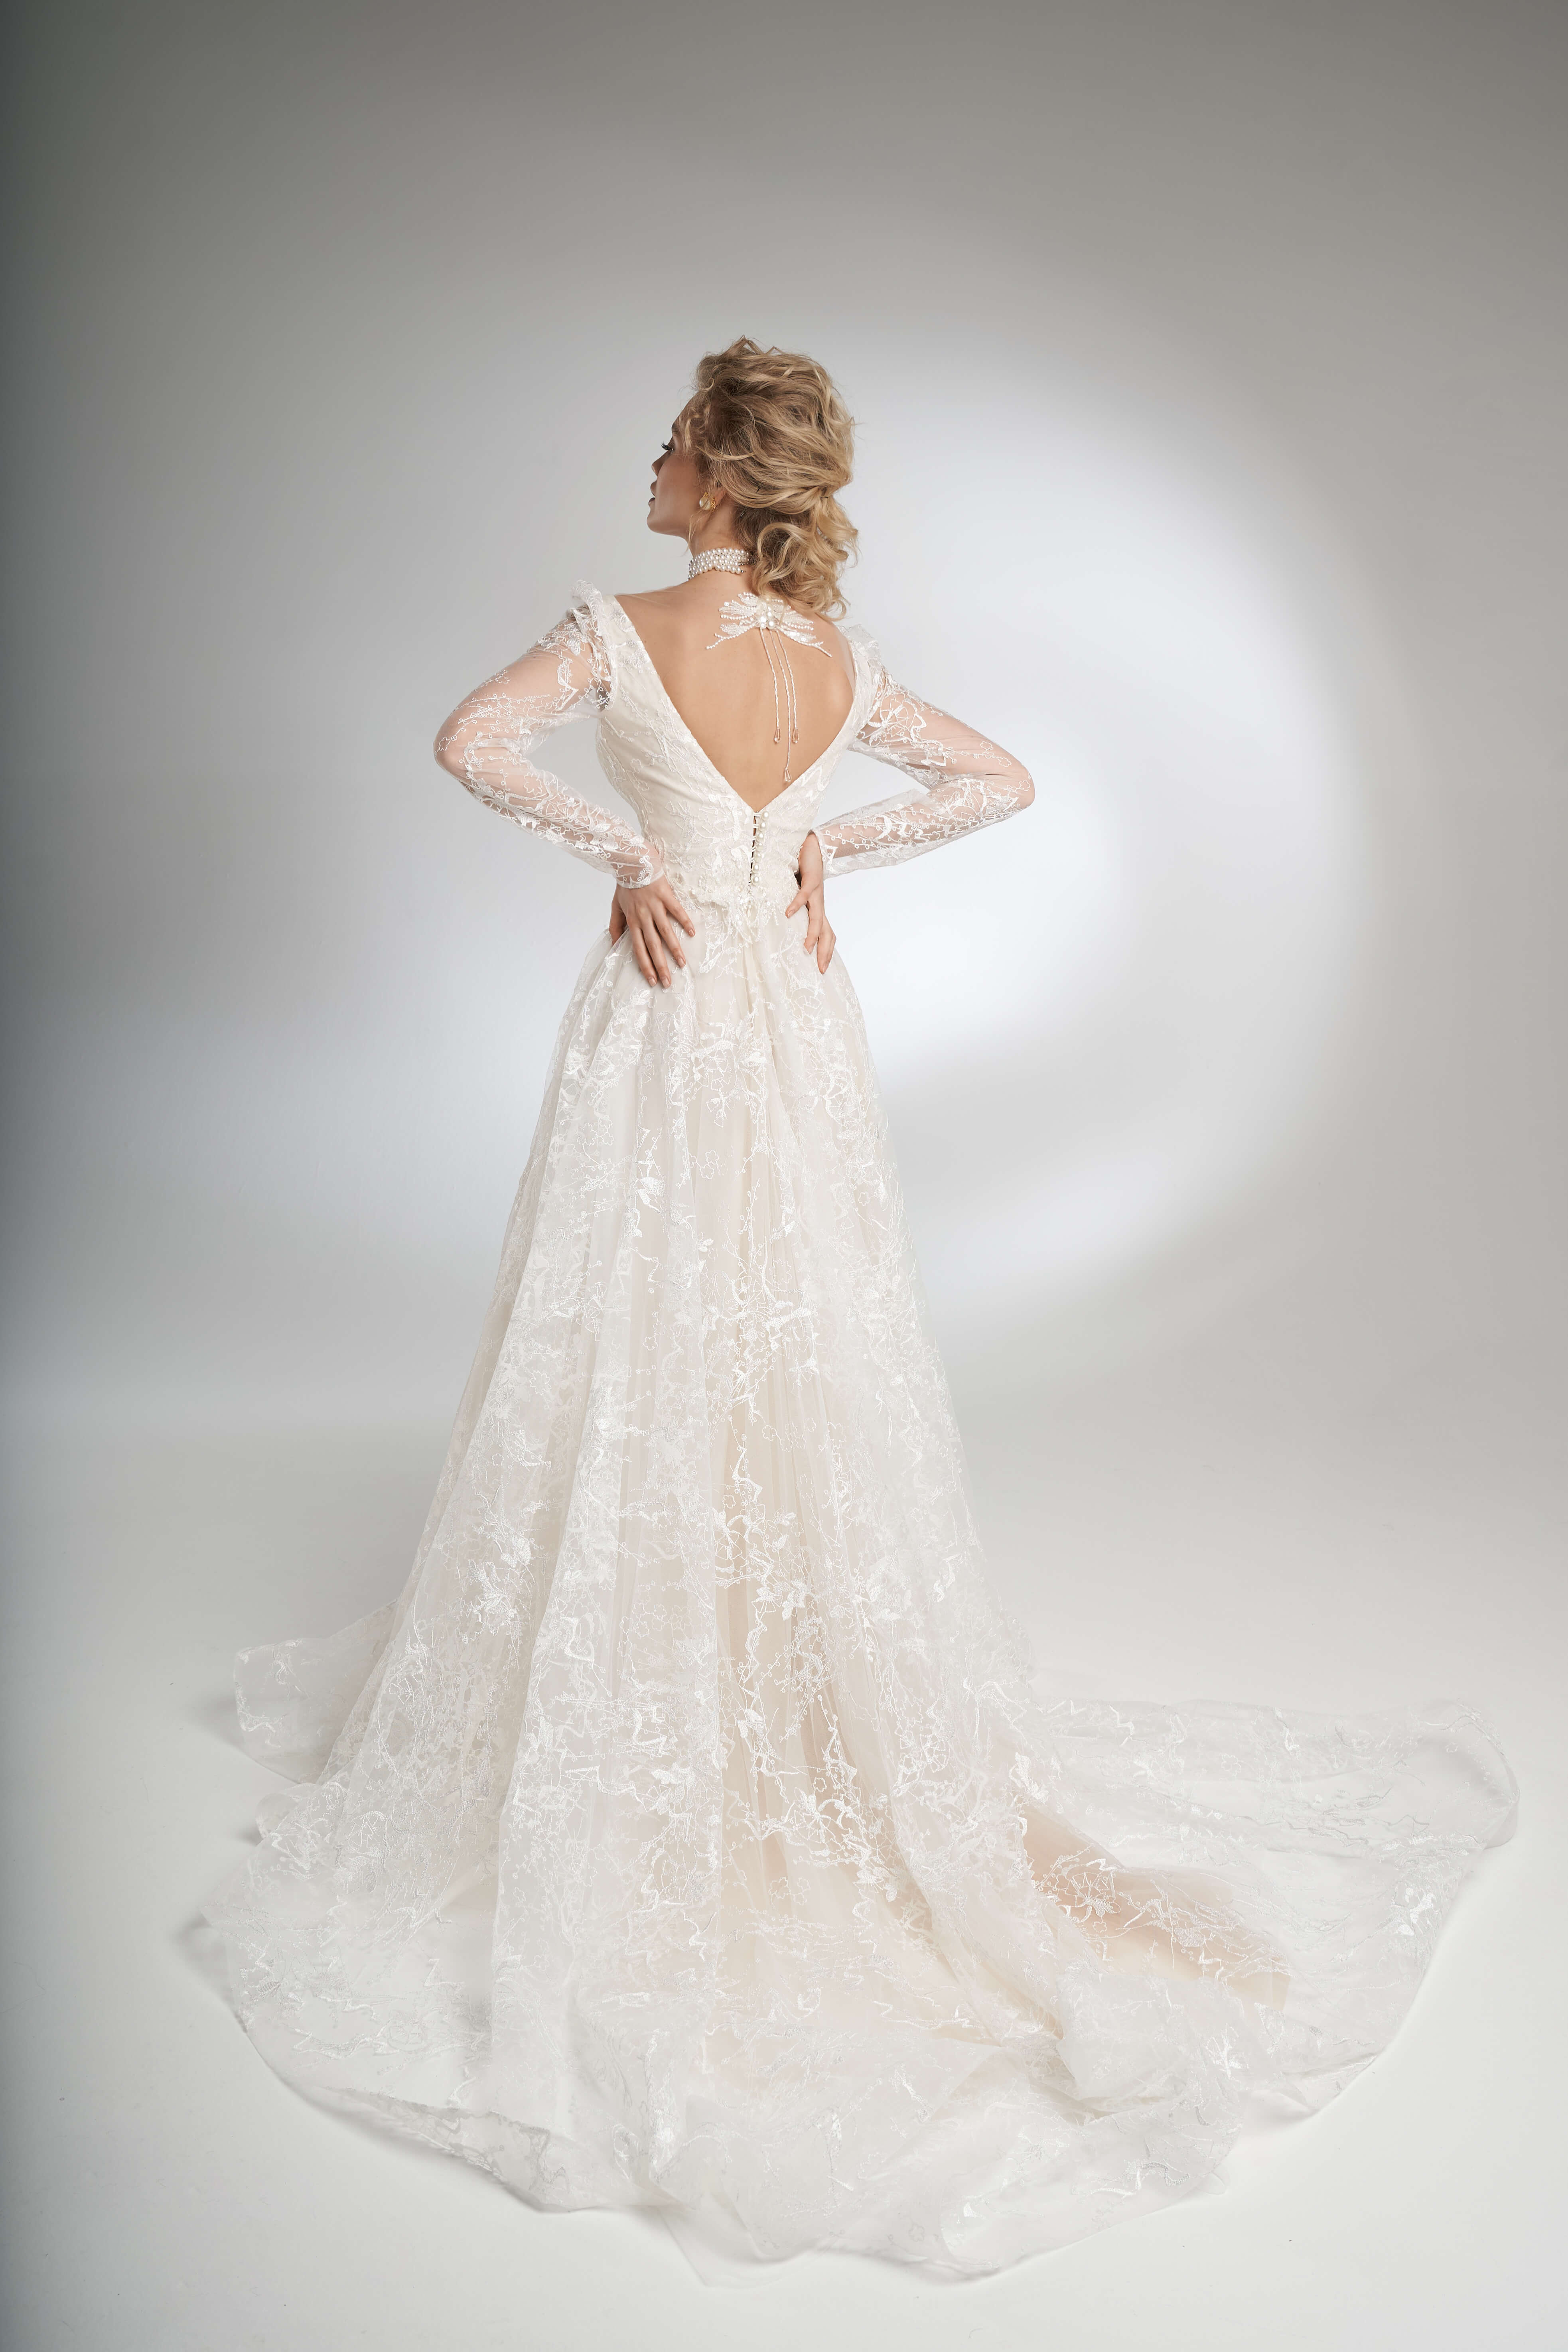 Купить свадебное платье «Бриана» Рара Авис из коллекции Пьюр 2022 года в салоне «Мэри Трюфель»